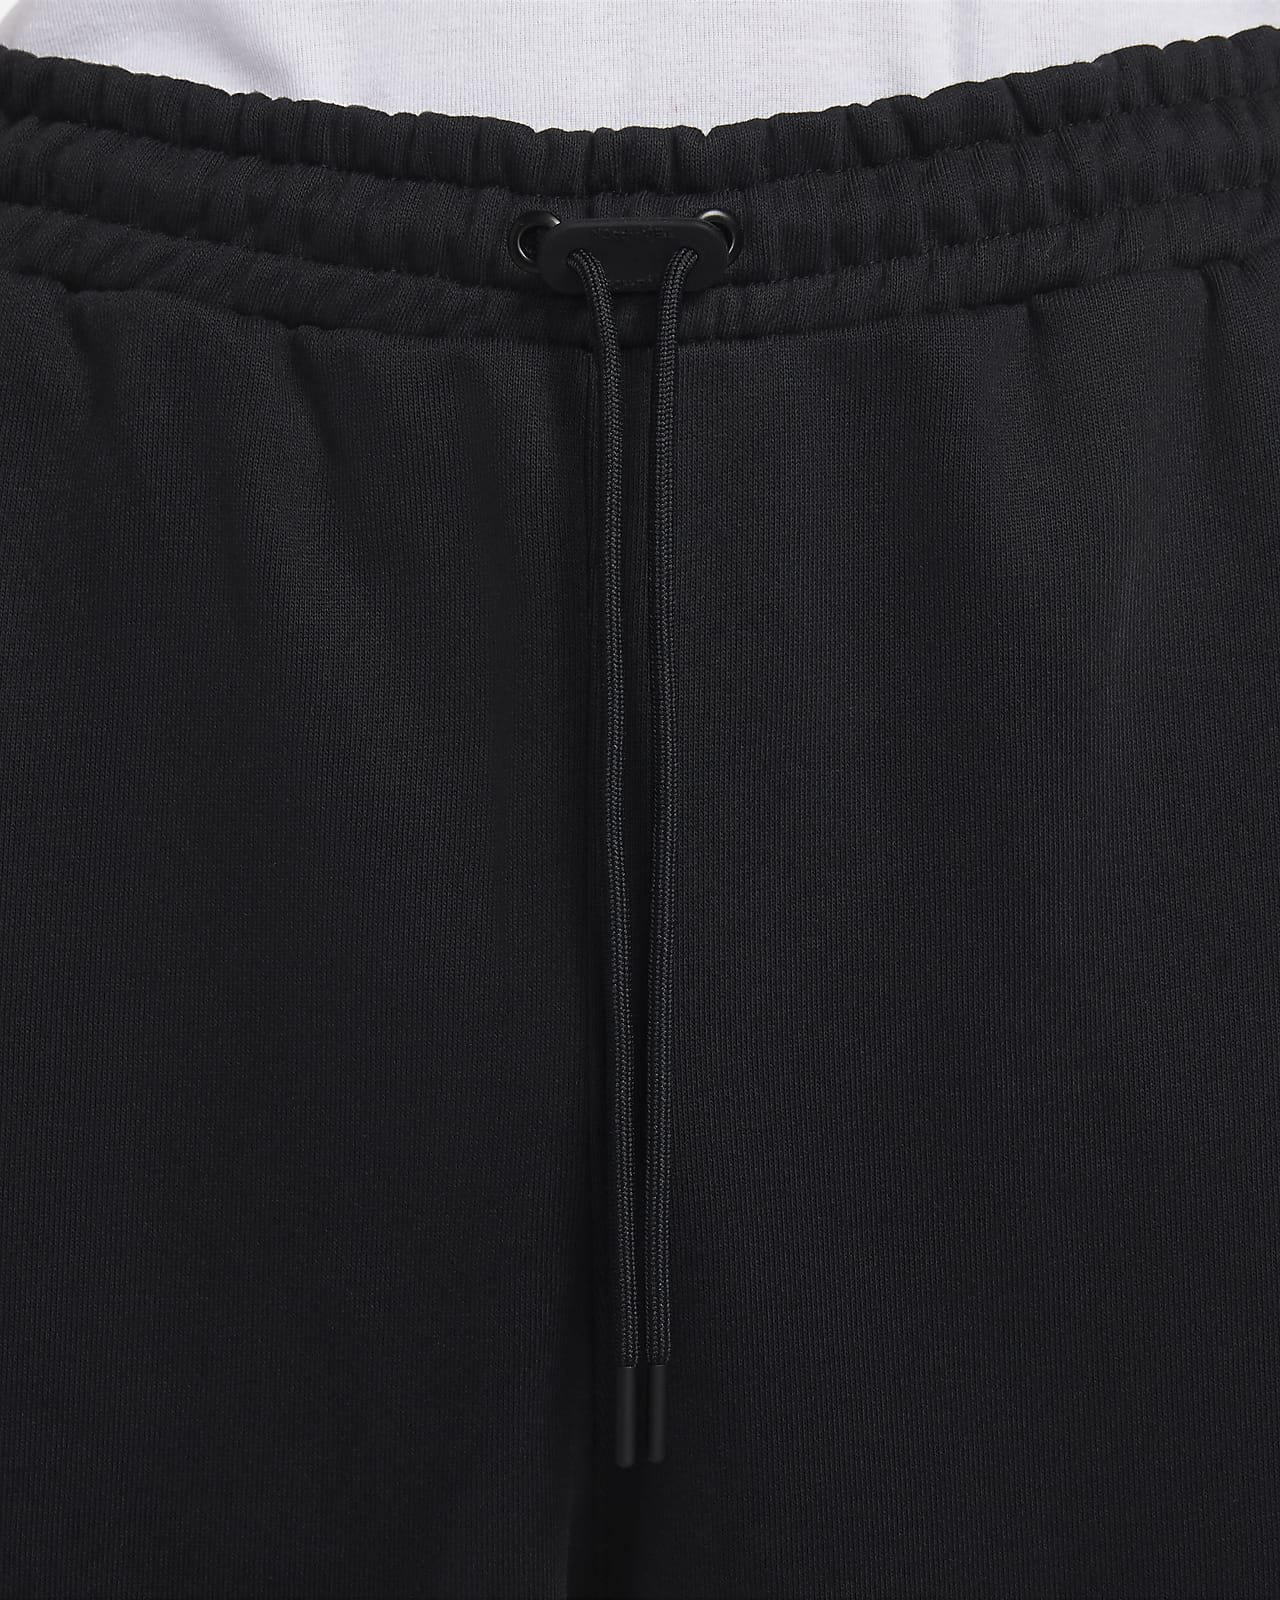 Nike Sportswear Therma-FIT Tech Pack Men's Repel Winterized Trousers